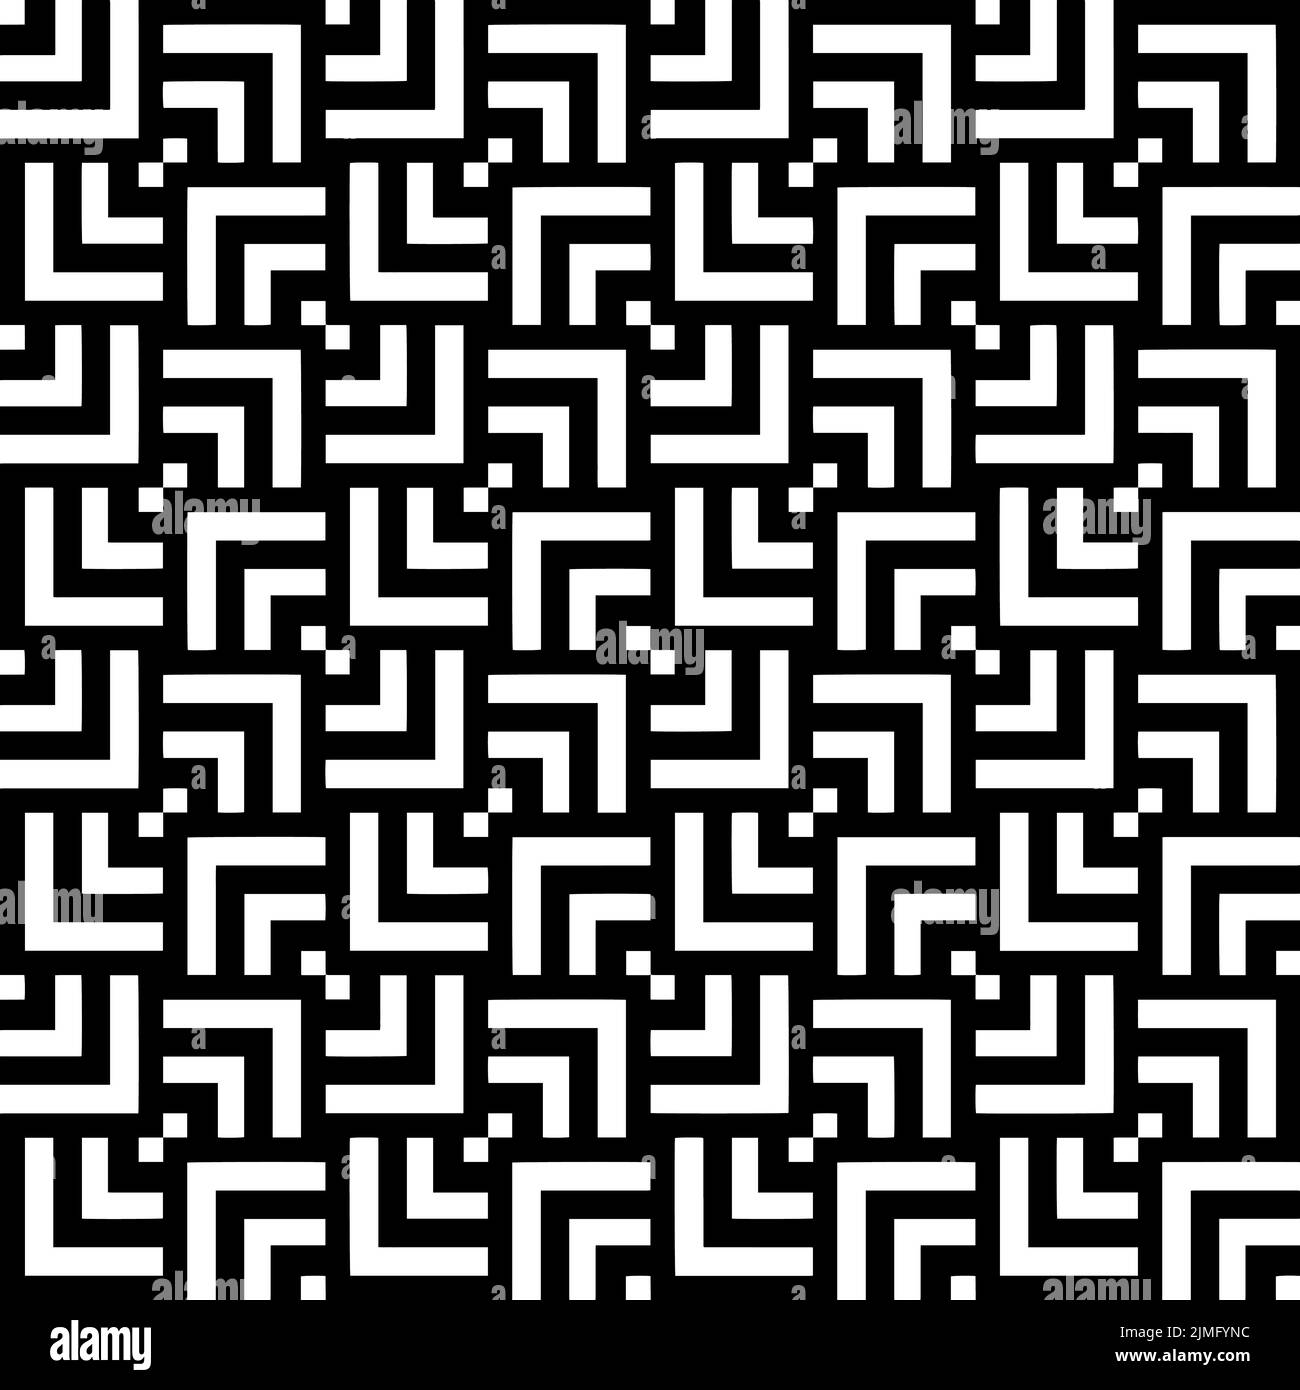 Schwarz-weiße Quadrate, Linien, karierte nahtlose Wiederholung Muster. Textur für Backdrops, Markieren, Karten, Geschenkpapier, Scrapbooking. Stock Vektor